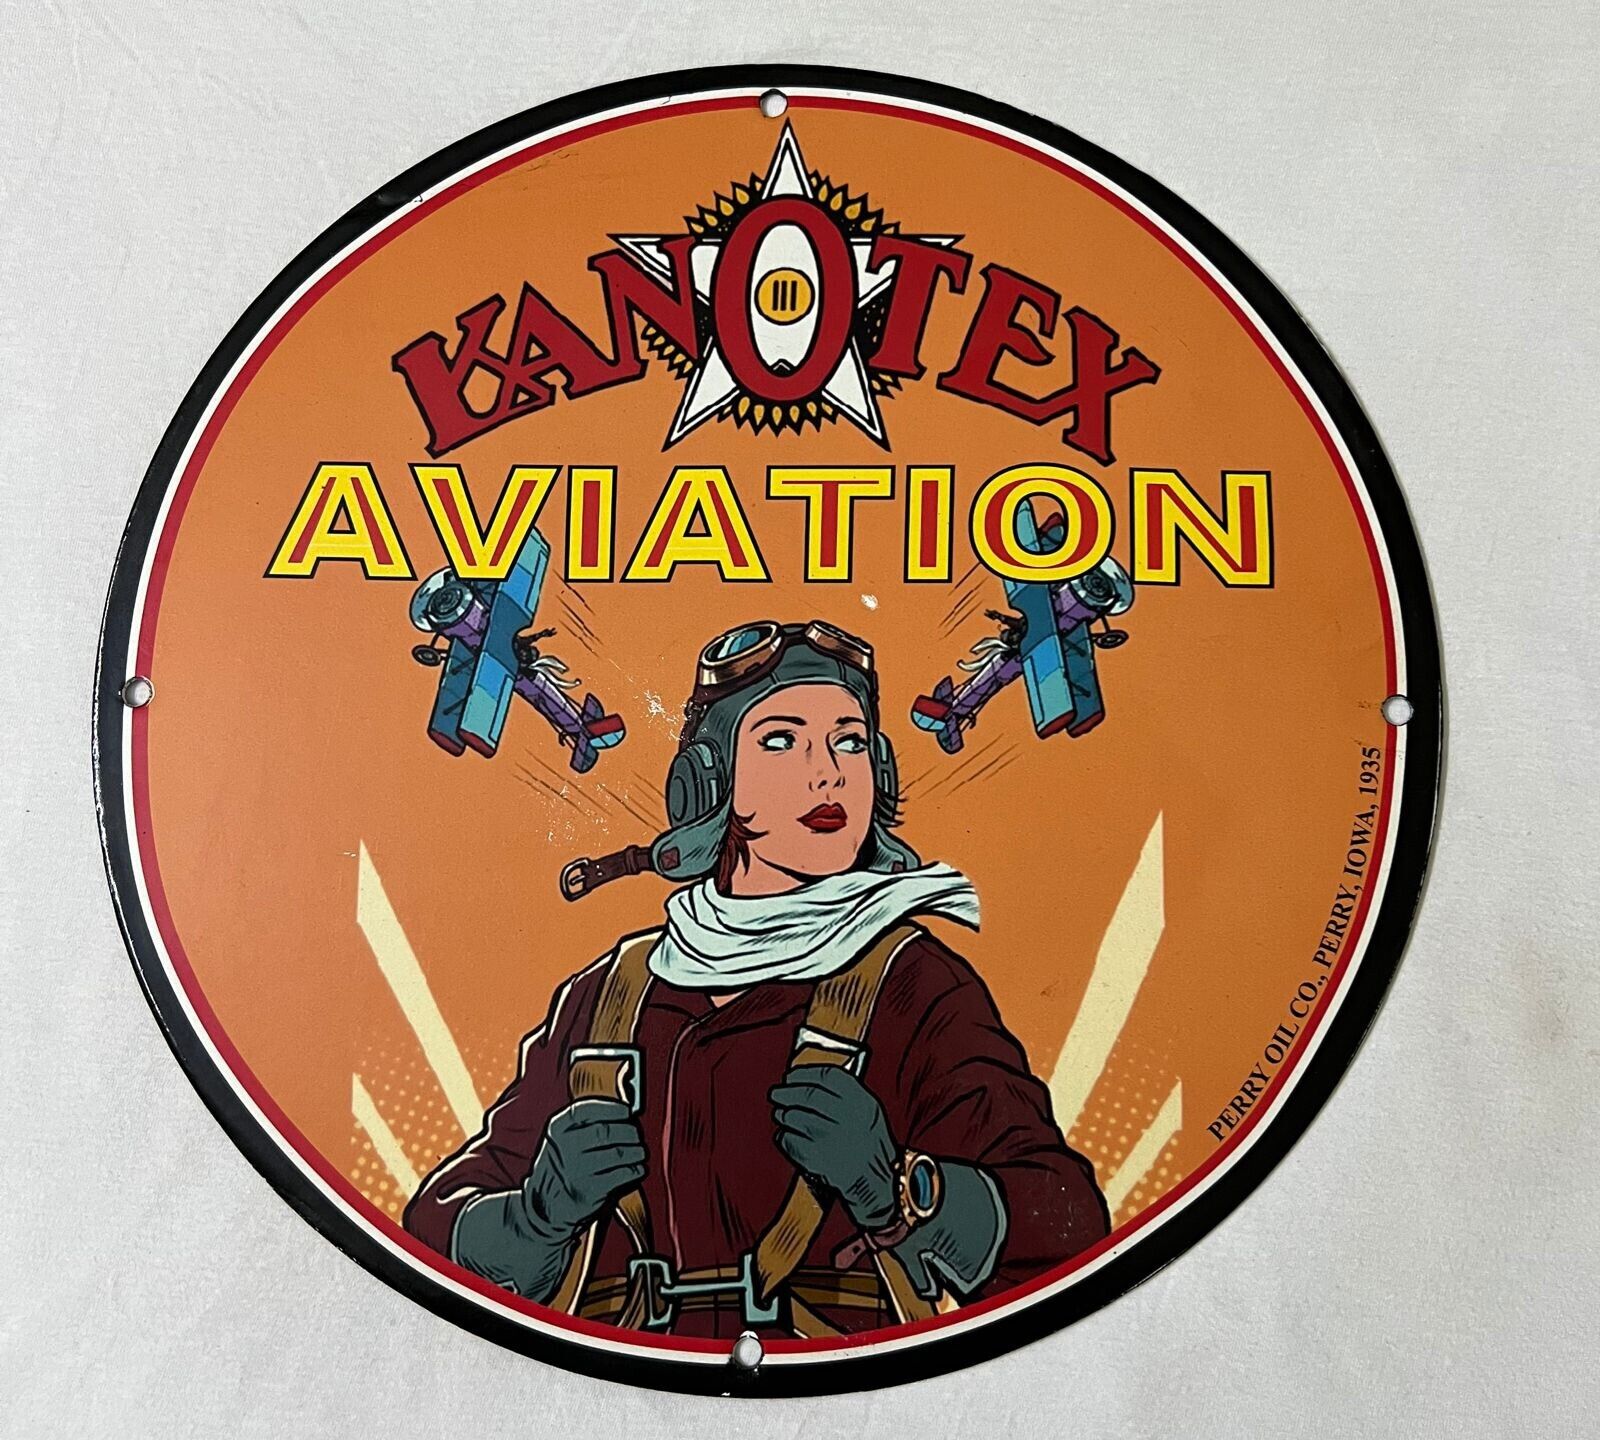 Kanotex Aviation Pinup Porcelain Enamel Sign.